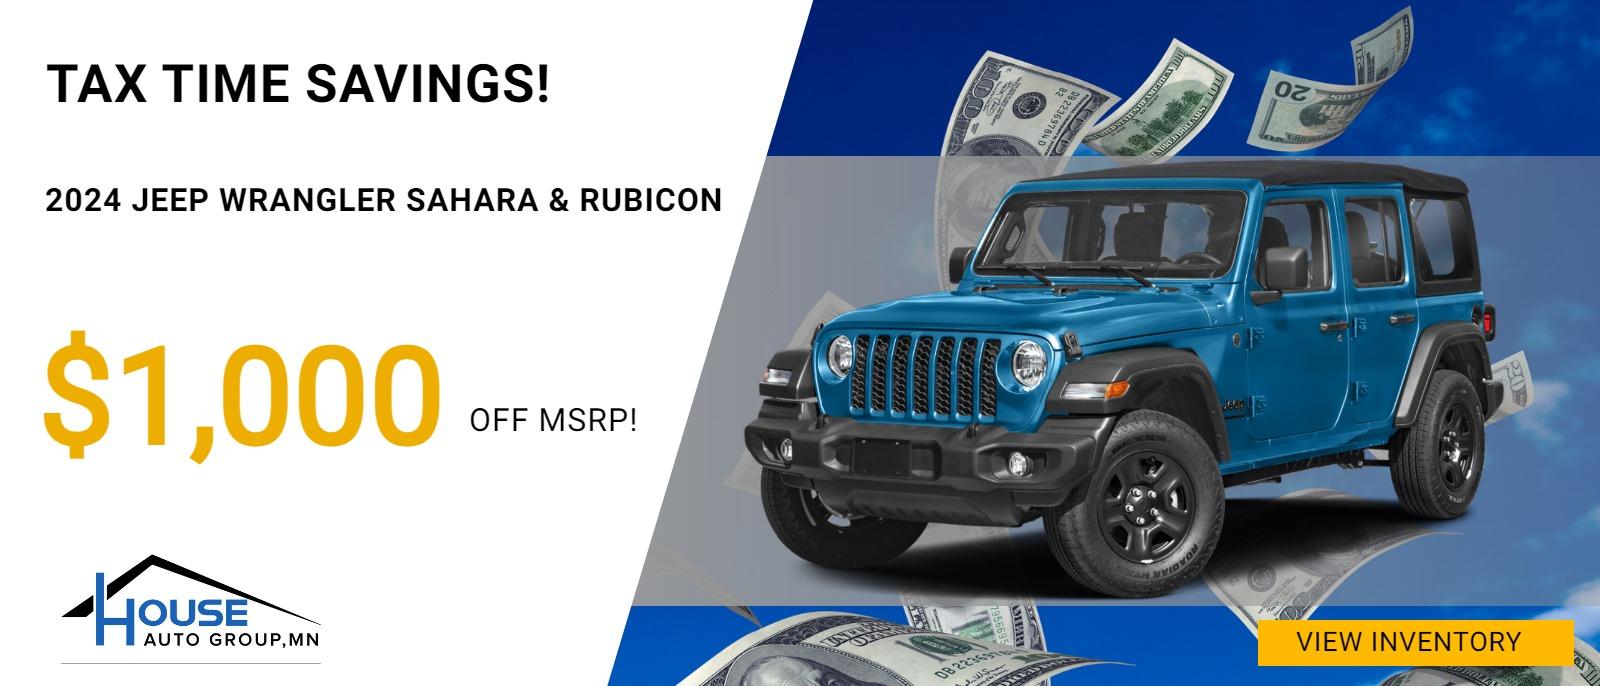 TAX TIME SAVINGS!
2024 Jeep Wrangler Sahara & Rubicon - $1,000 Off MSRP!